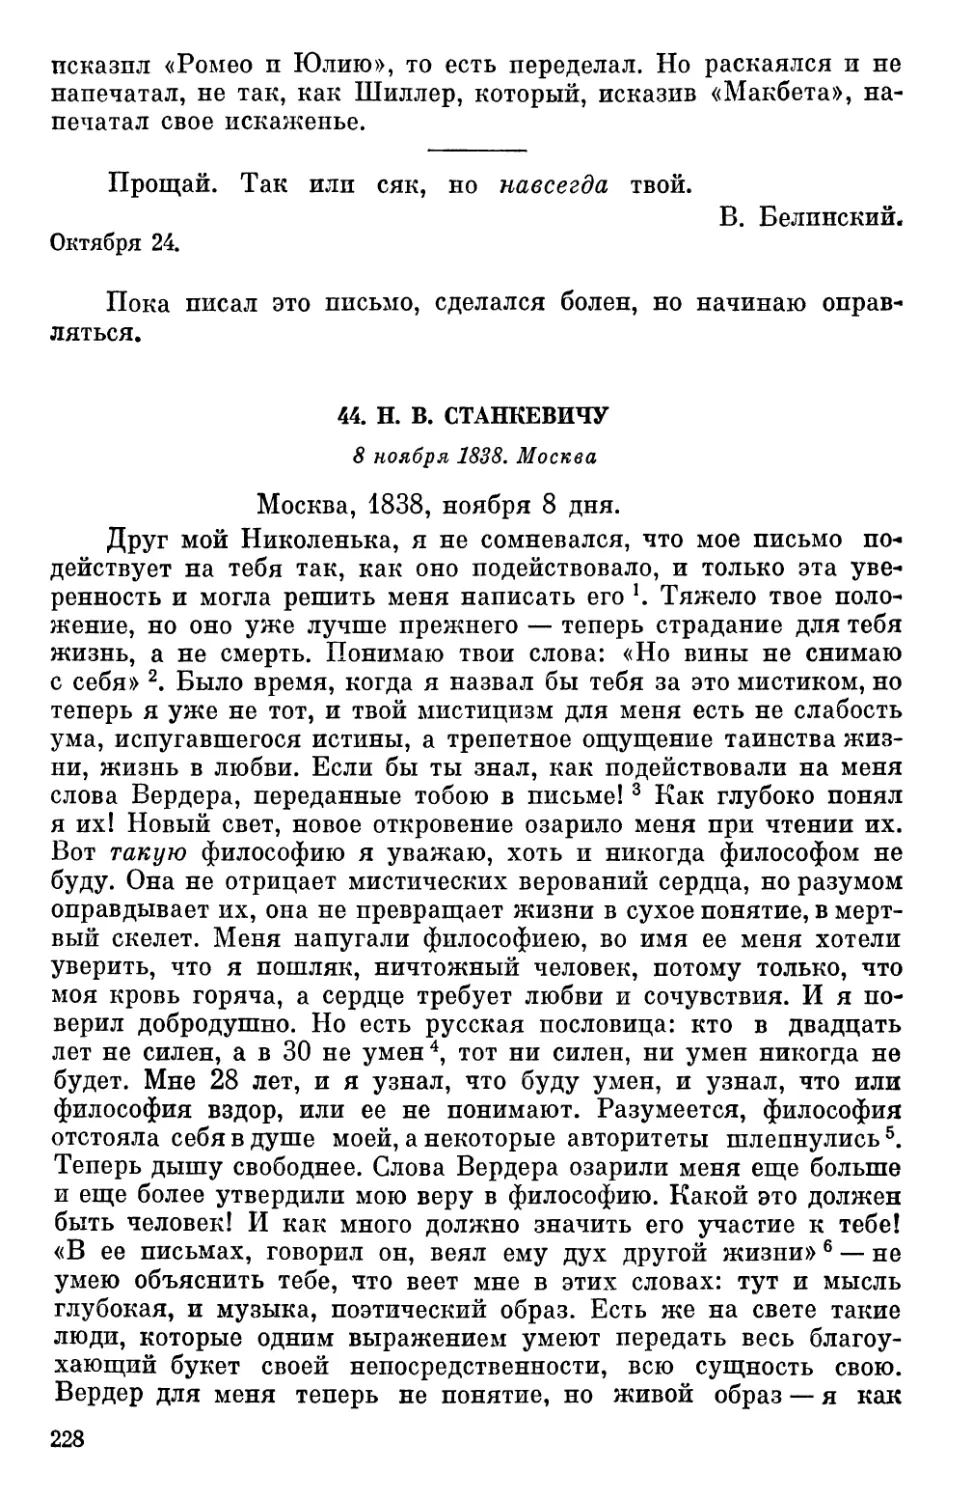 44. Н. В. Станкевичу. 8 ноября 1838